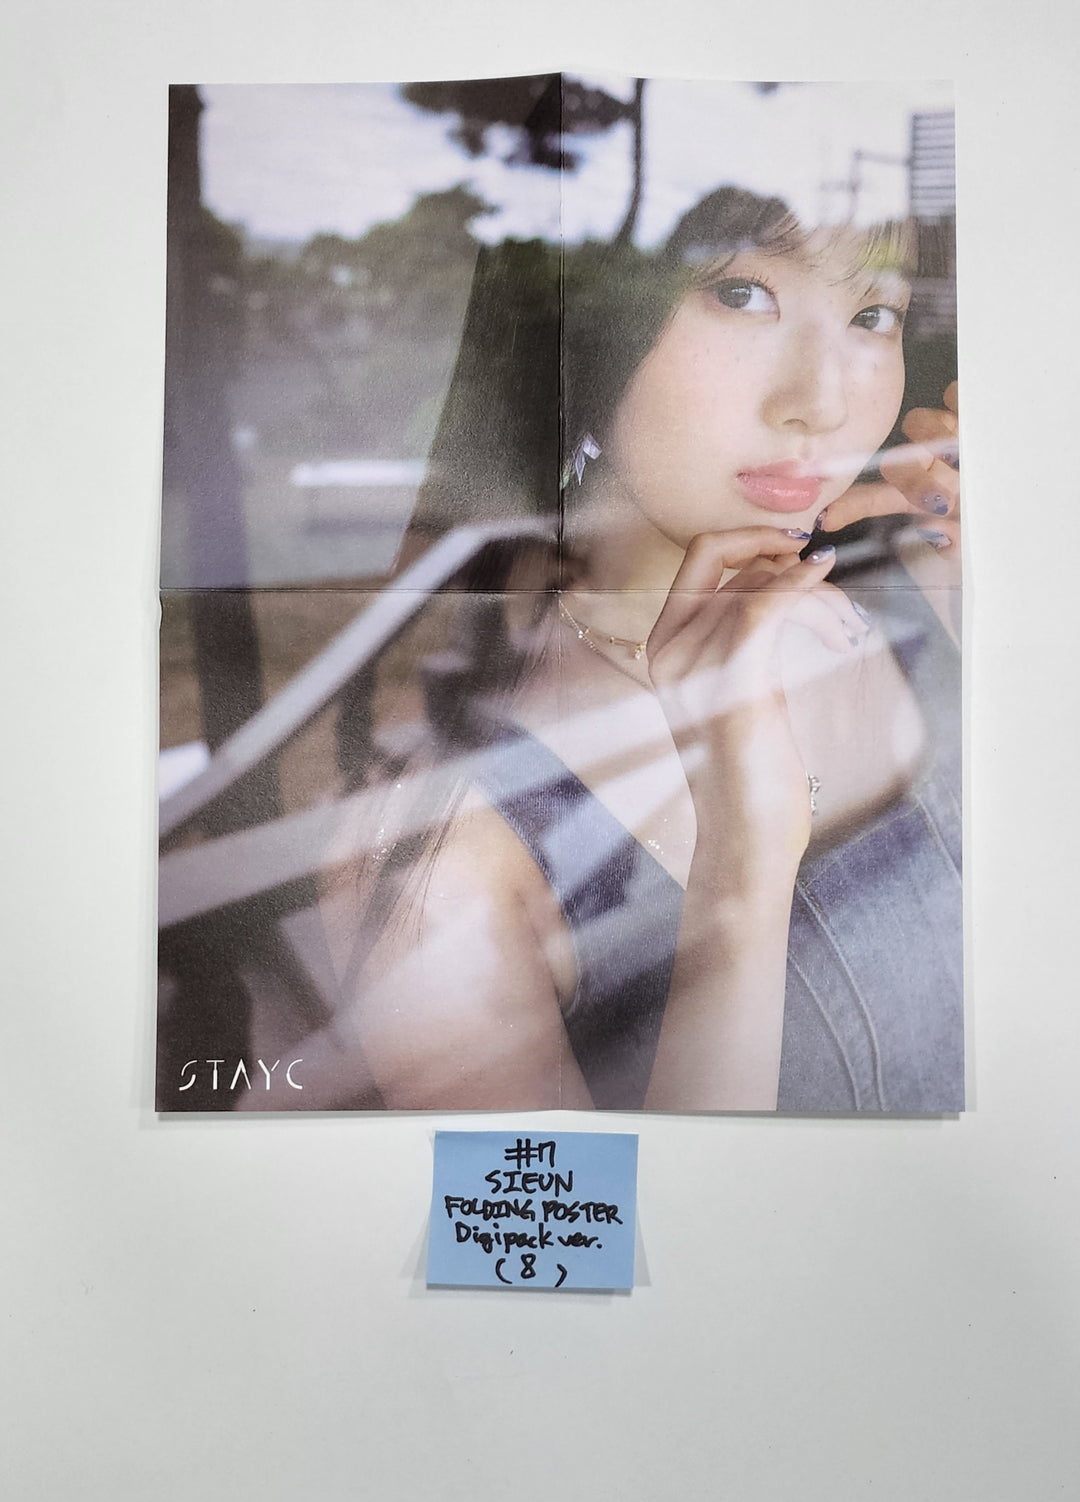 StayC「WE NEED LOVE」オフィシャルフォトカード、折りたたみポスター【デジパック版】